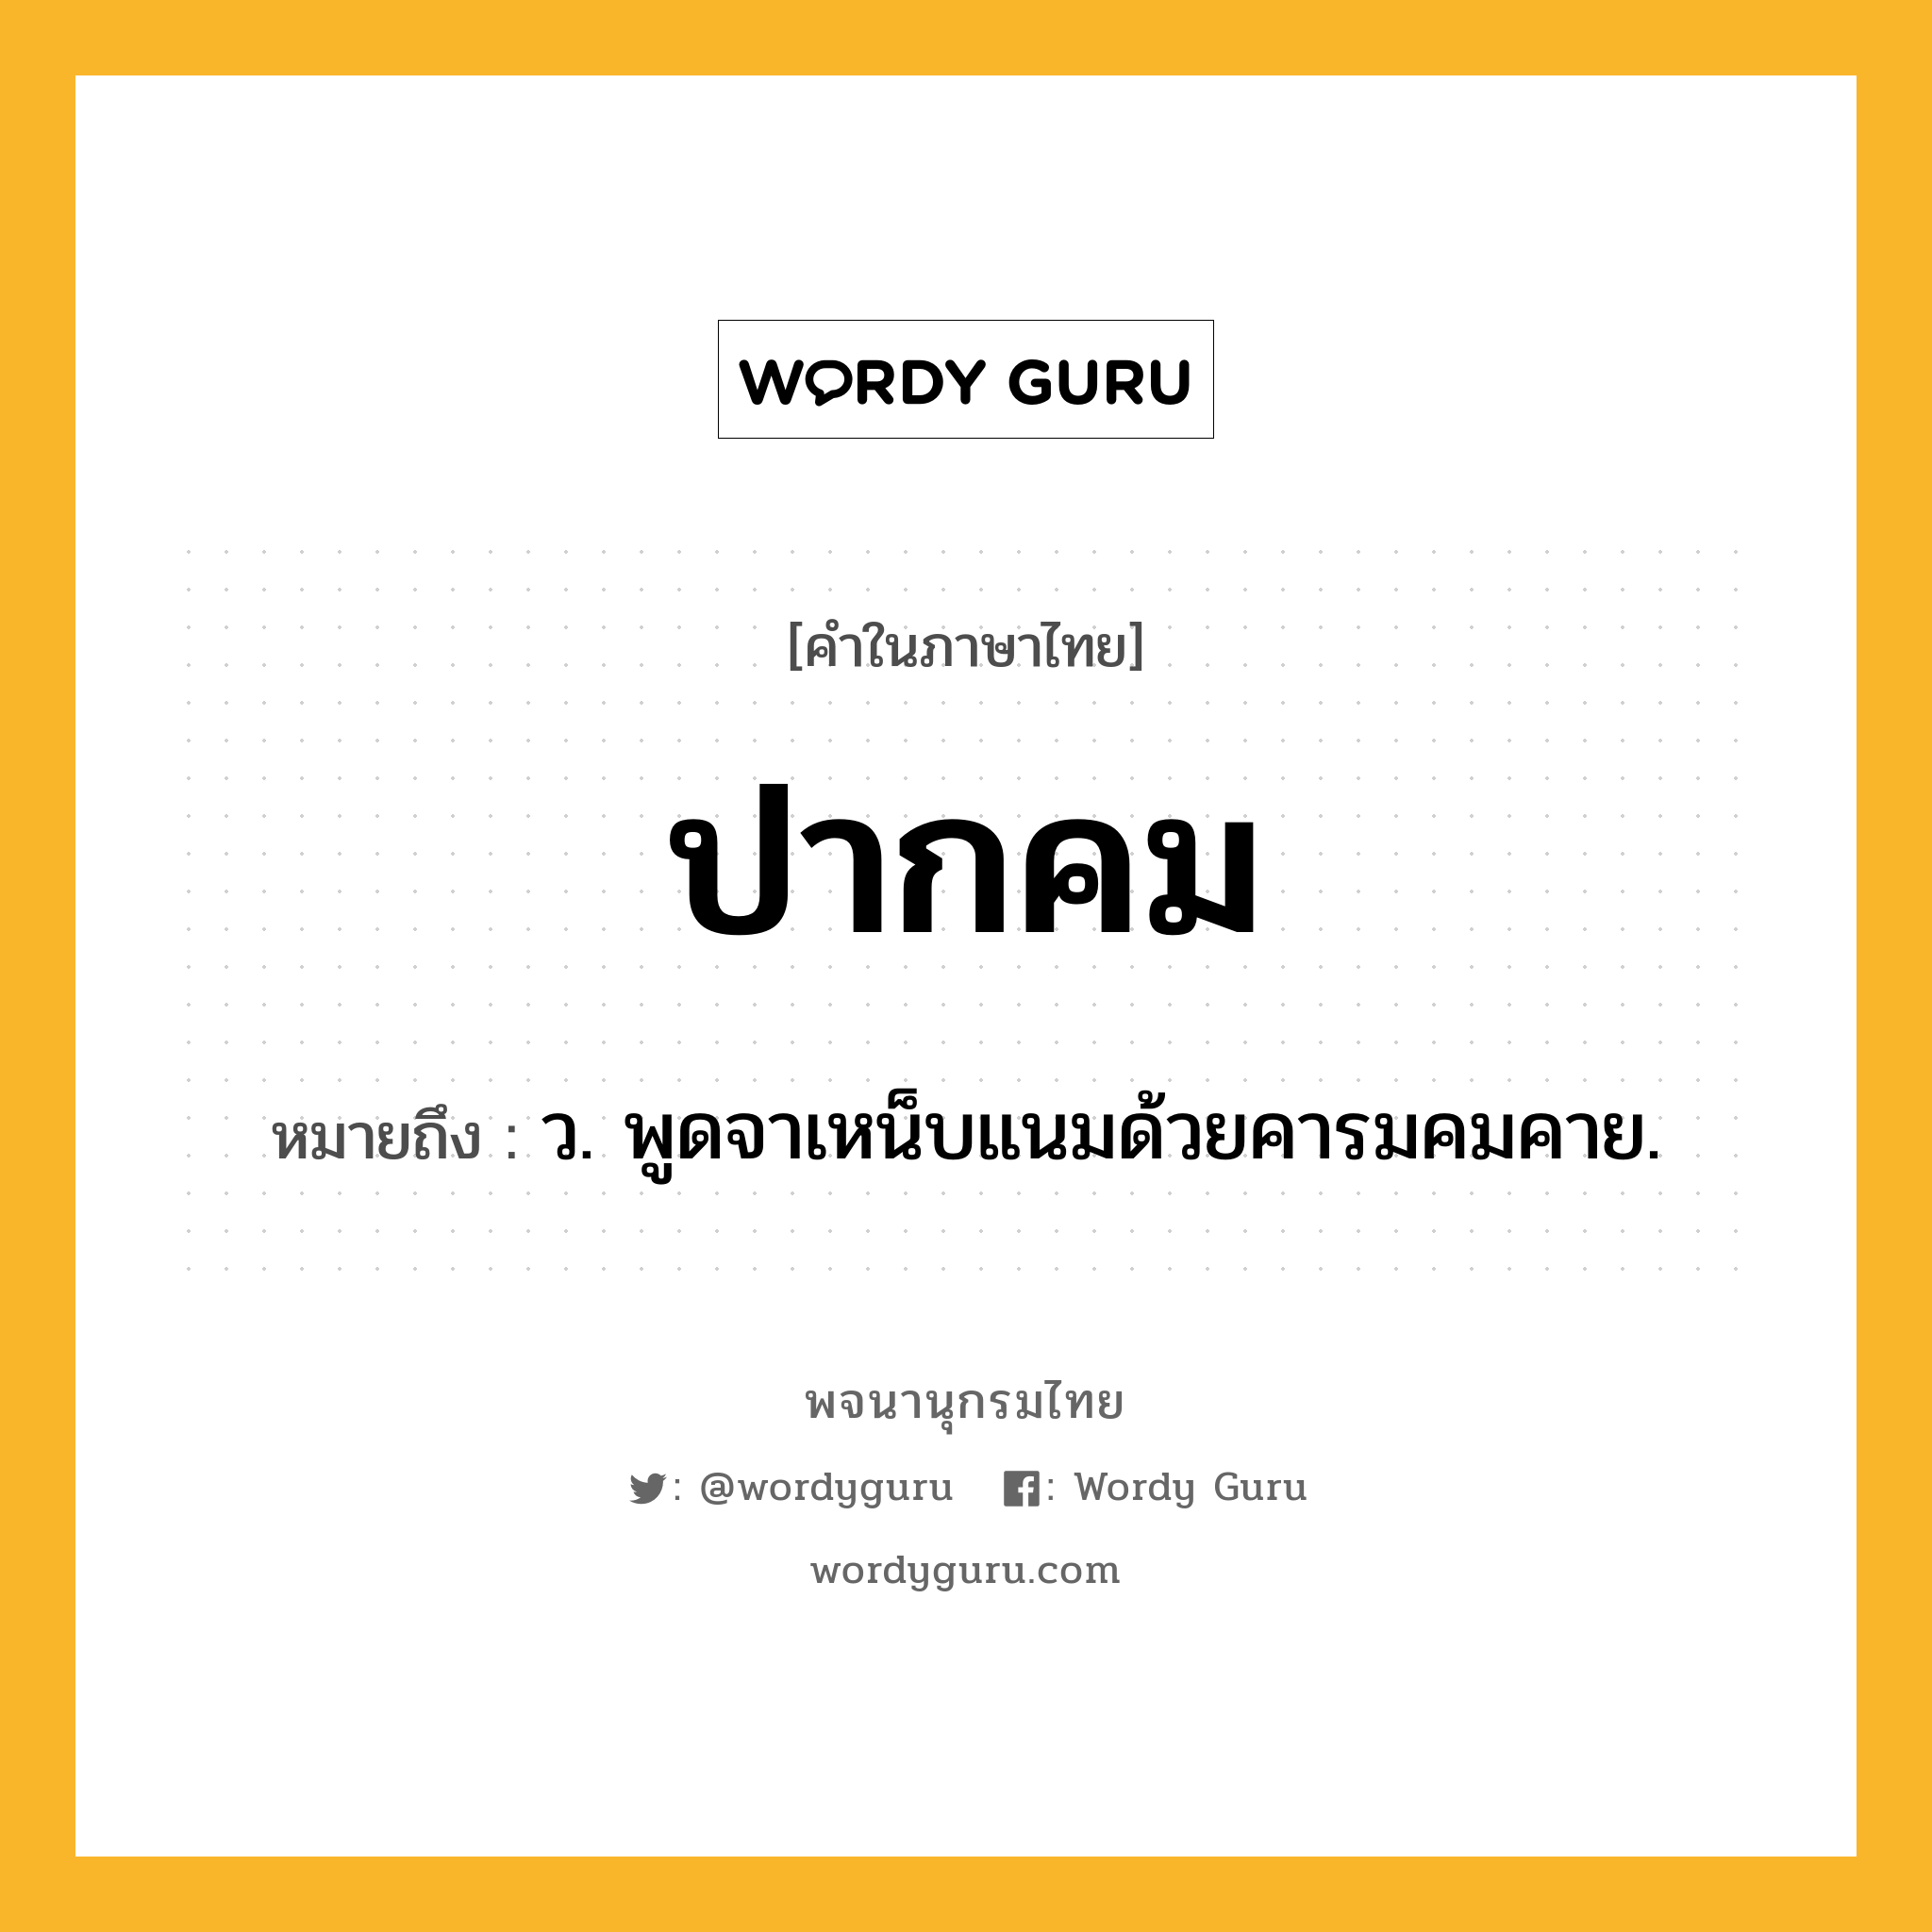 ปากคม หมายถึงอะไร?, คำในภาษาไทย ปากคม หมายถึง ว. พูดจาเหน็บแนมด้วยคารมคมคาย.